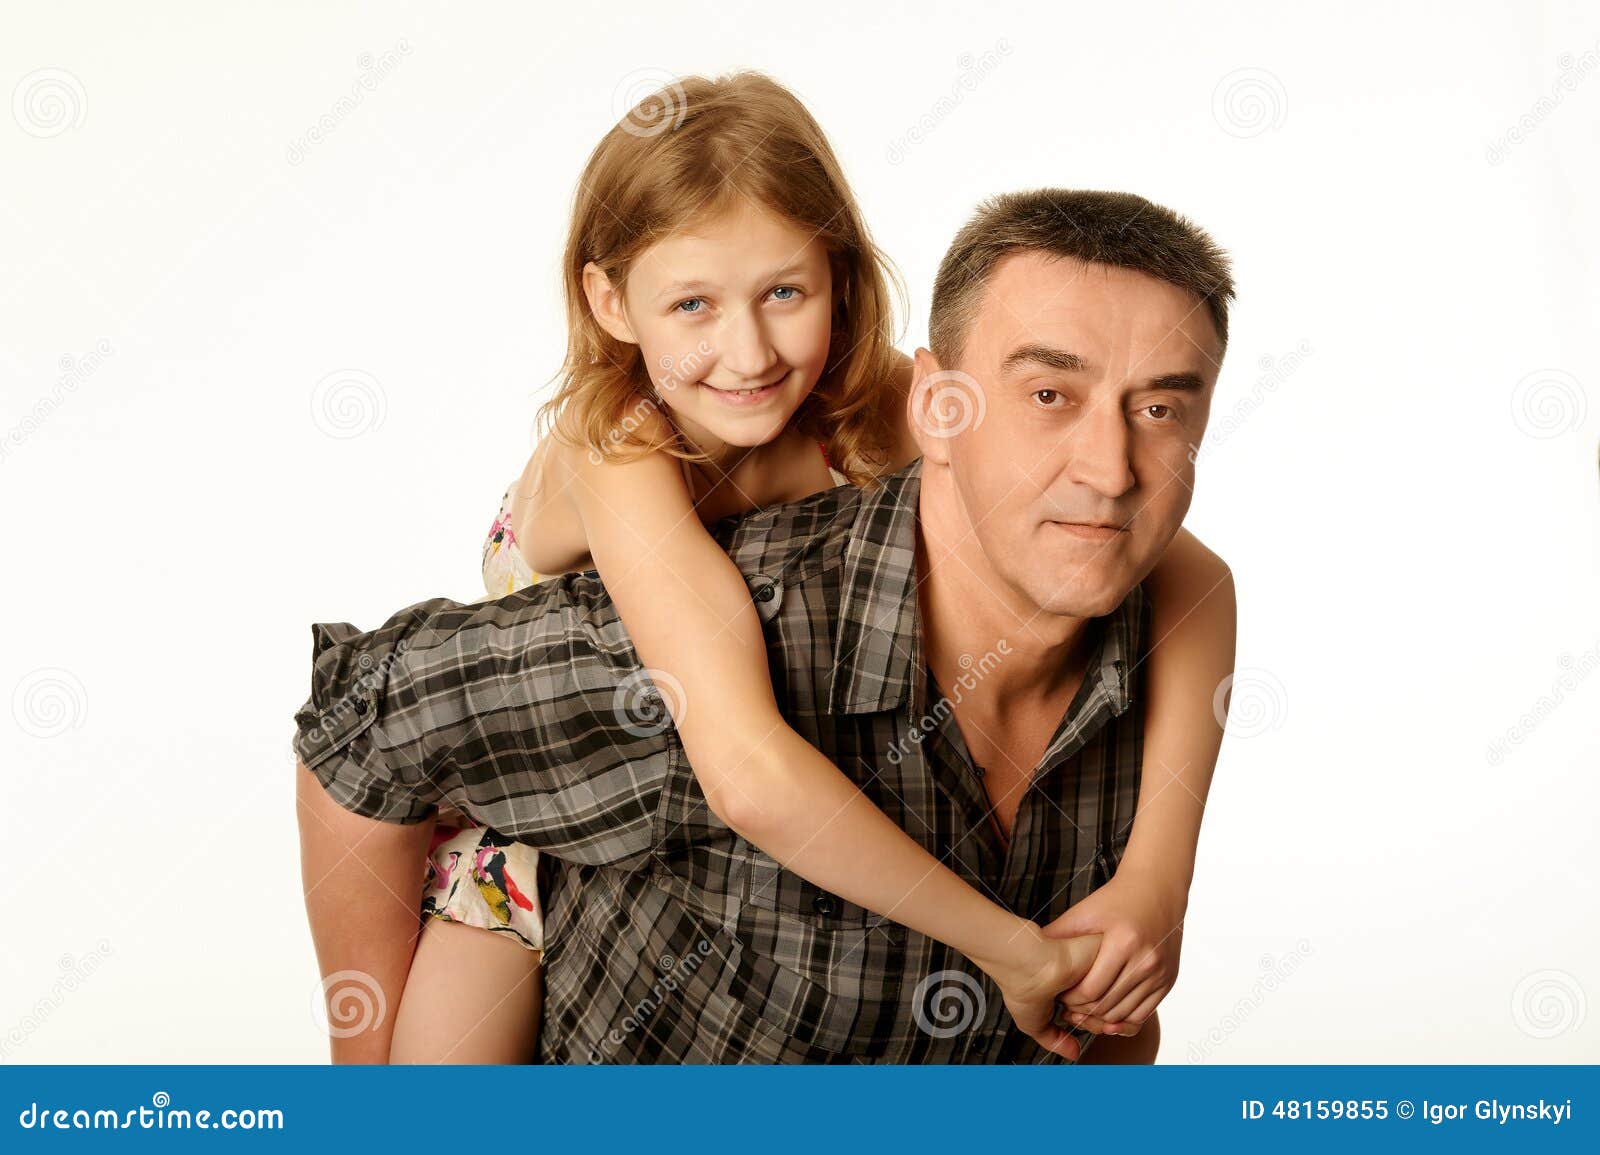 отец трахает дочь 10 летнюю дочь фото 12